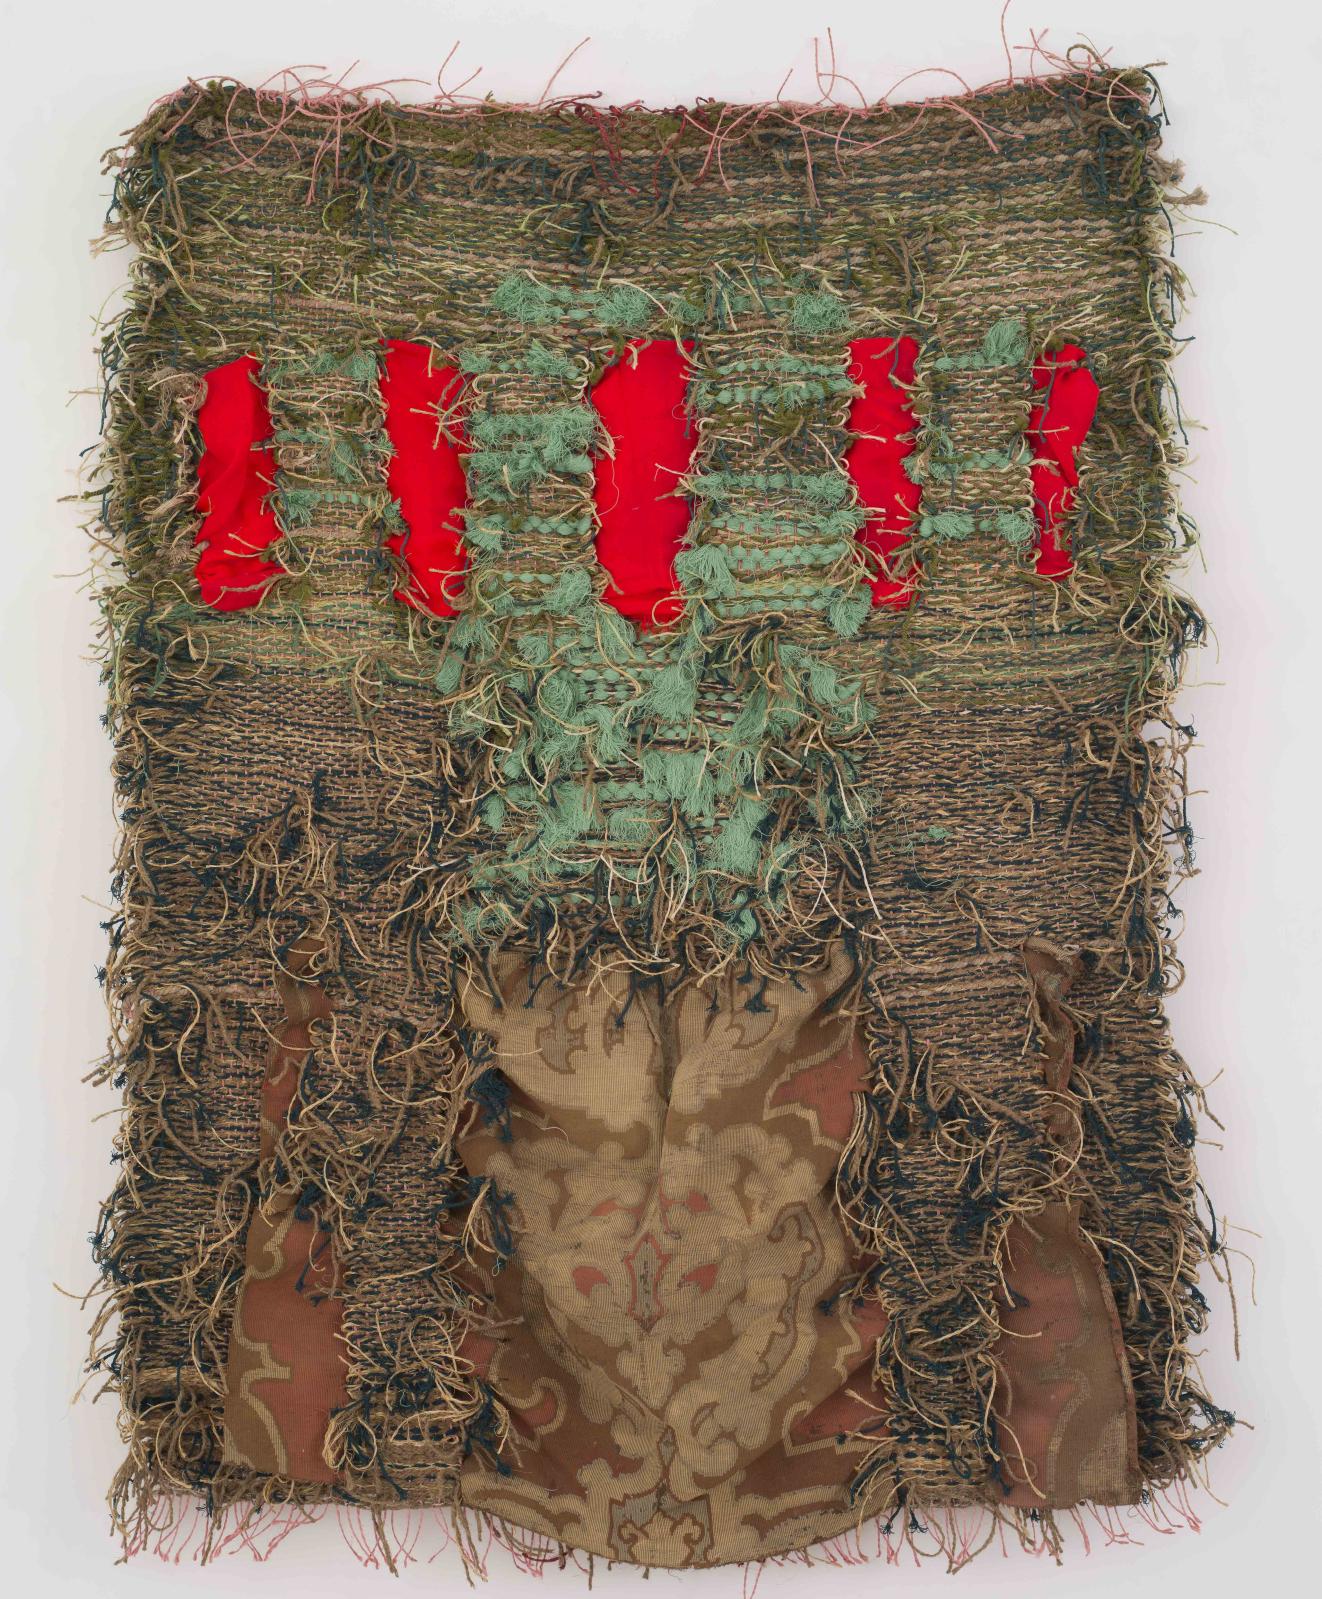 Josep Grau-Garriga (1929-2011), Drap I mès (Tissu et davantage), 2011, coton, tissu, jacquard et raphia, 165 x 125 cm. Galerie Nathalie Obadia. Courte